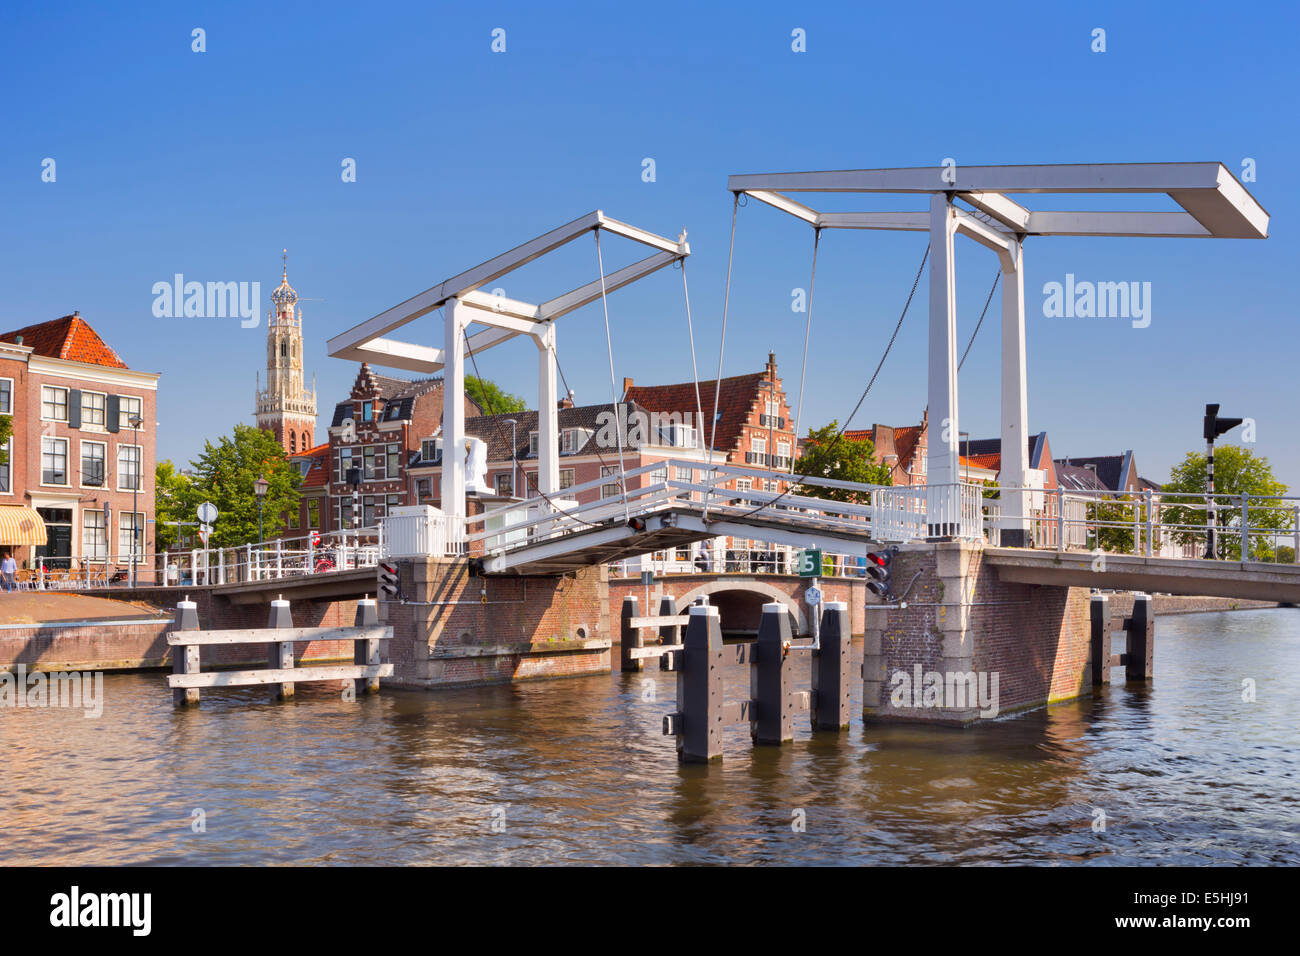 Pont sur la rivière Spaarne dans la ville de Haarlem, Pays-Bas Banque D'Images